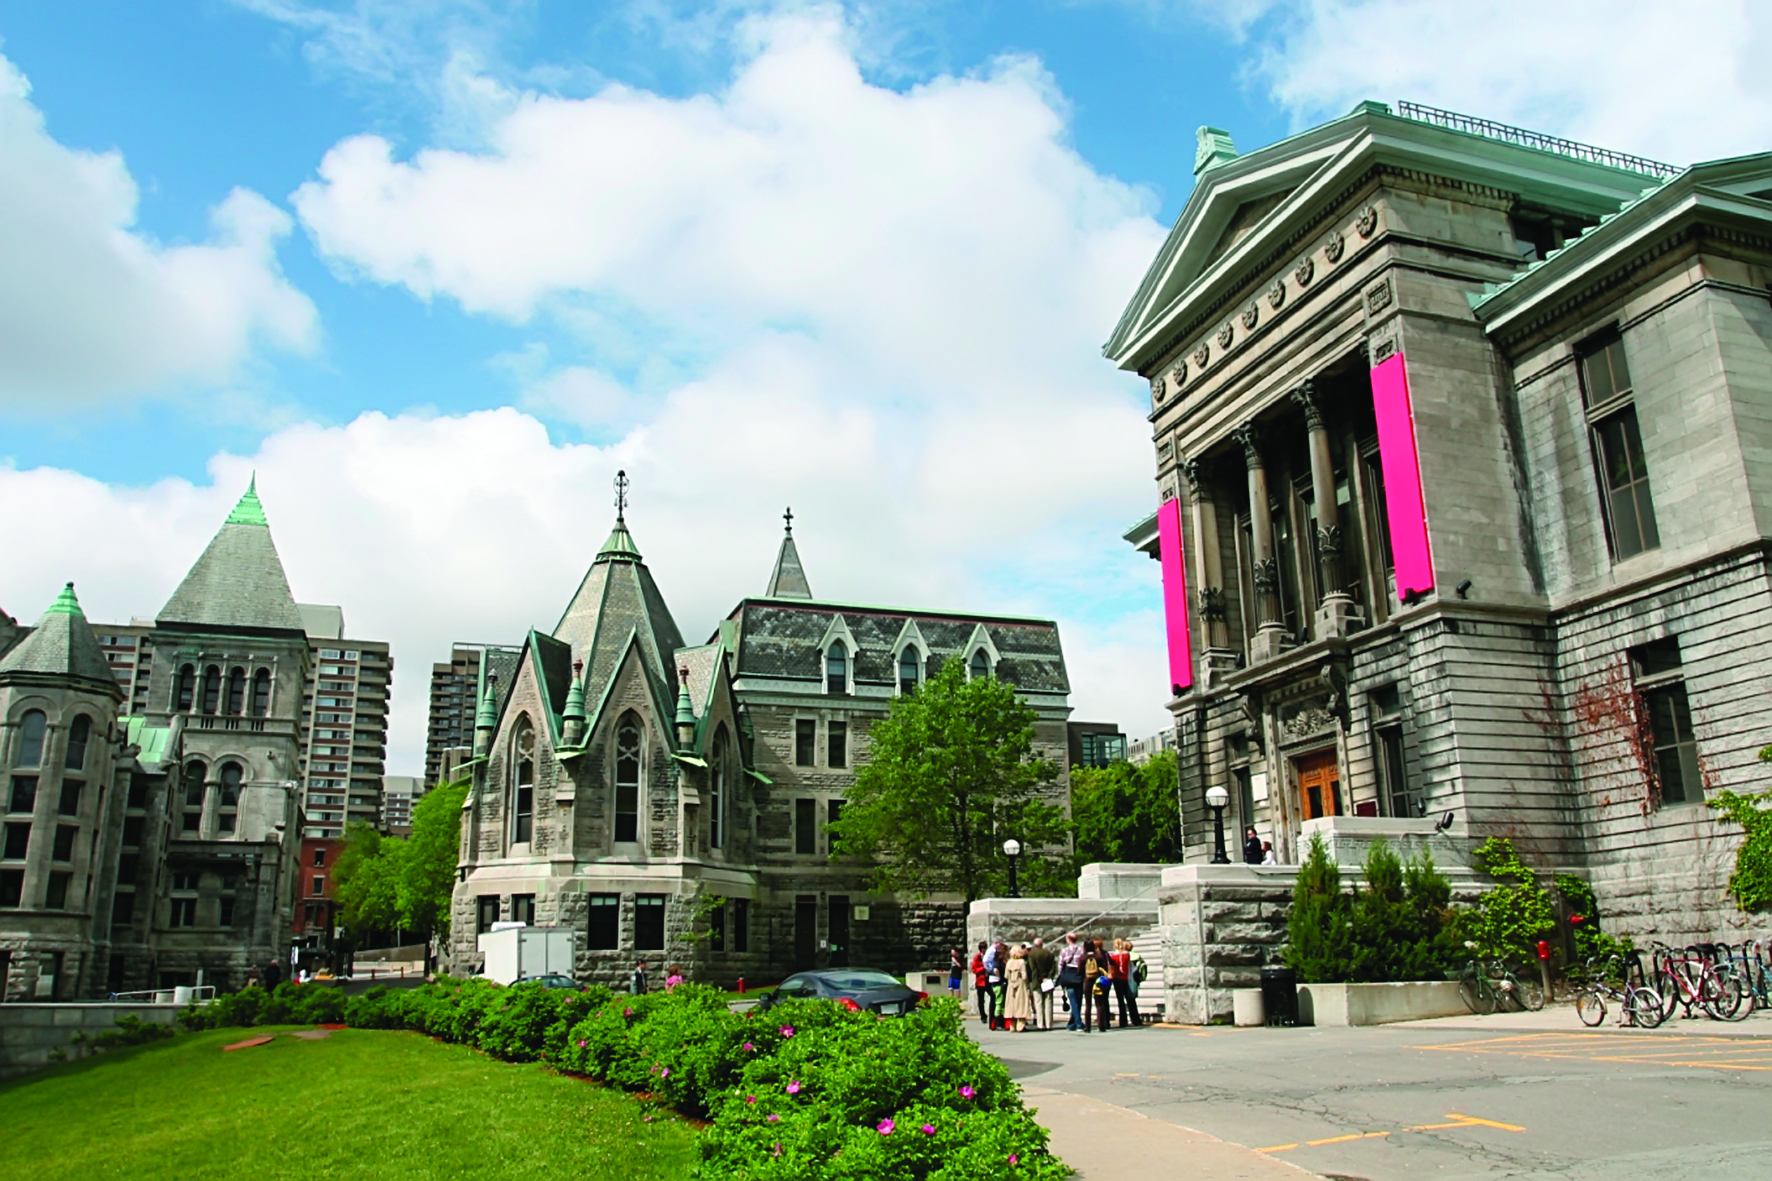 Đại học McGill